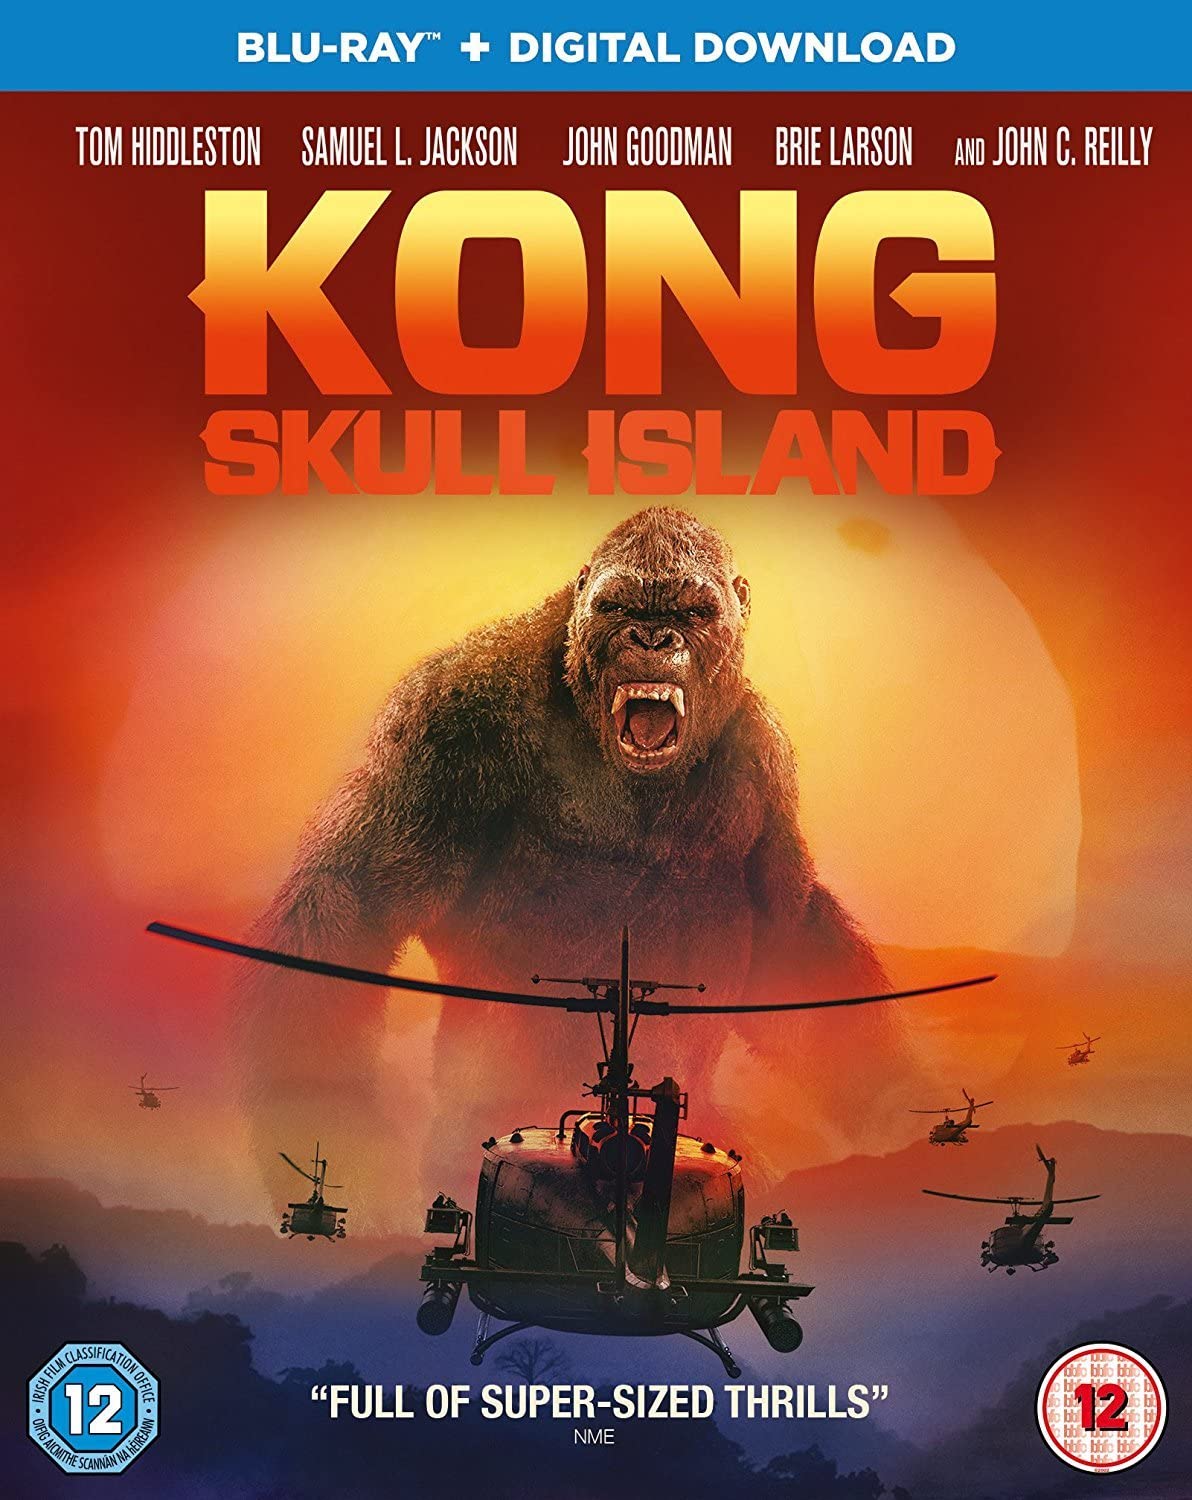 king kong movie download in hindi